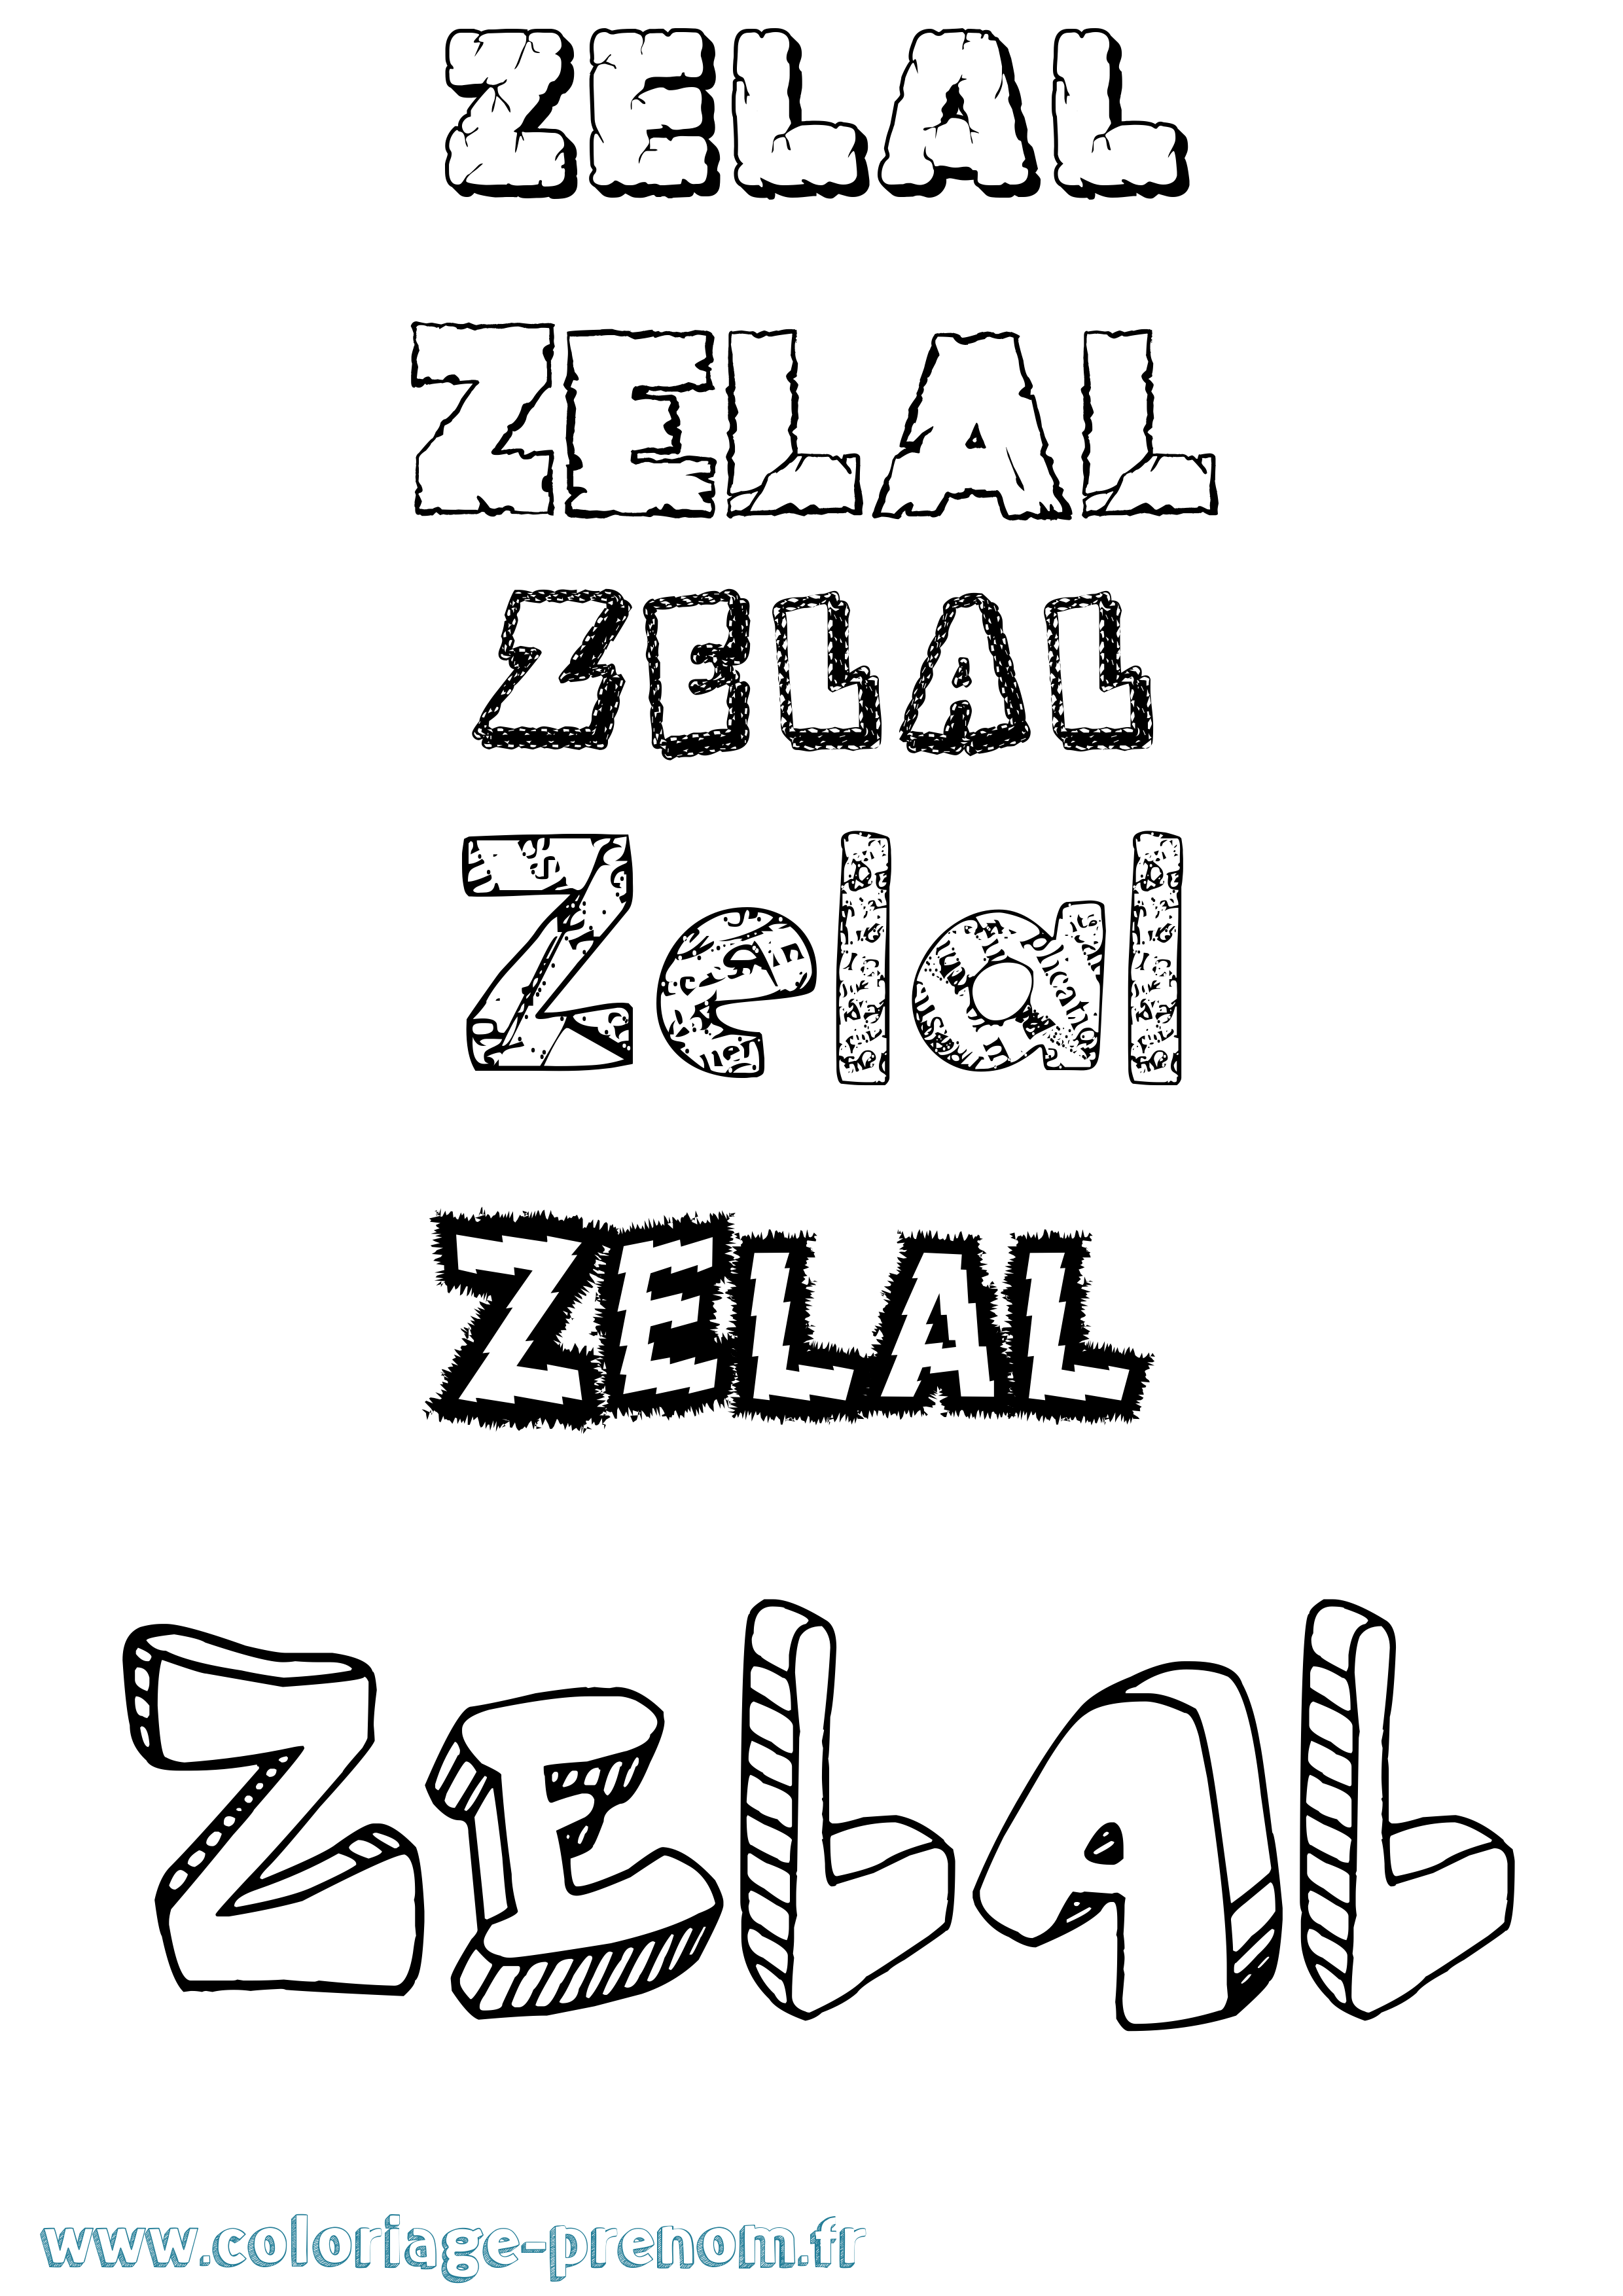 Coloriage prénom Zelal Destructuré